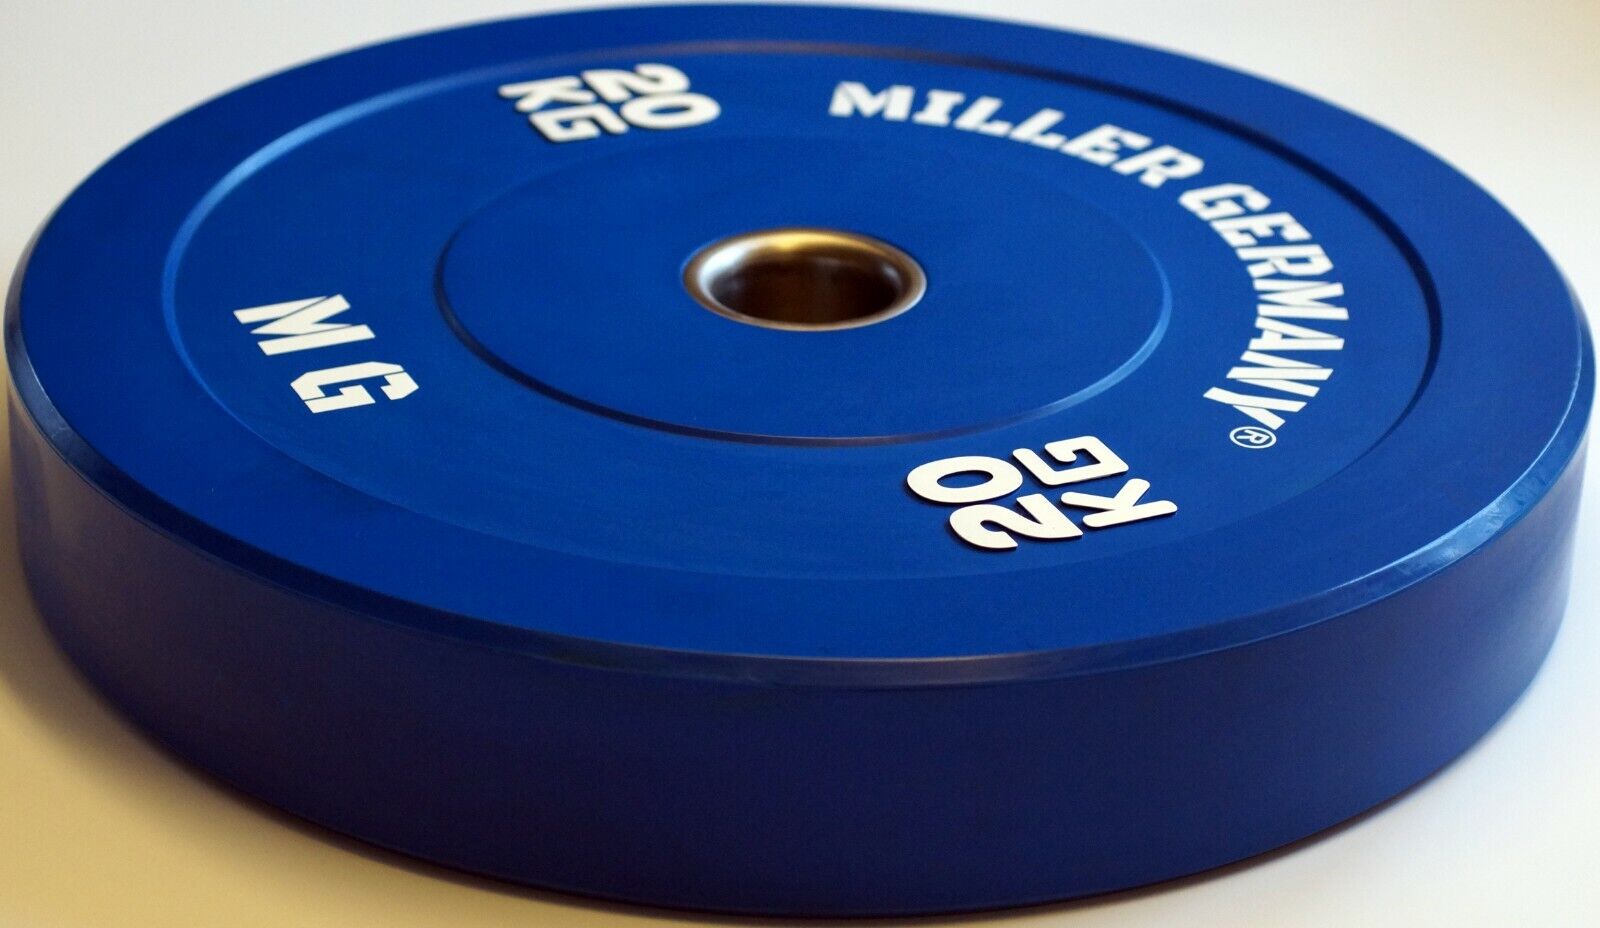 Details zu  Olympia Hantelscheiben Bumper Plates 50mm Gummi Gewichte Gewichtsscheiben farbig Reichlich Versandhandel